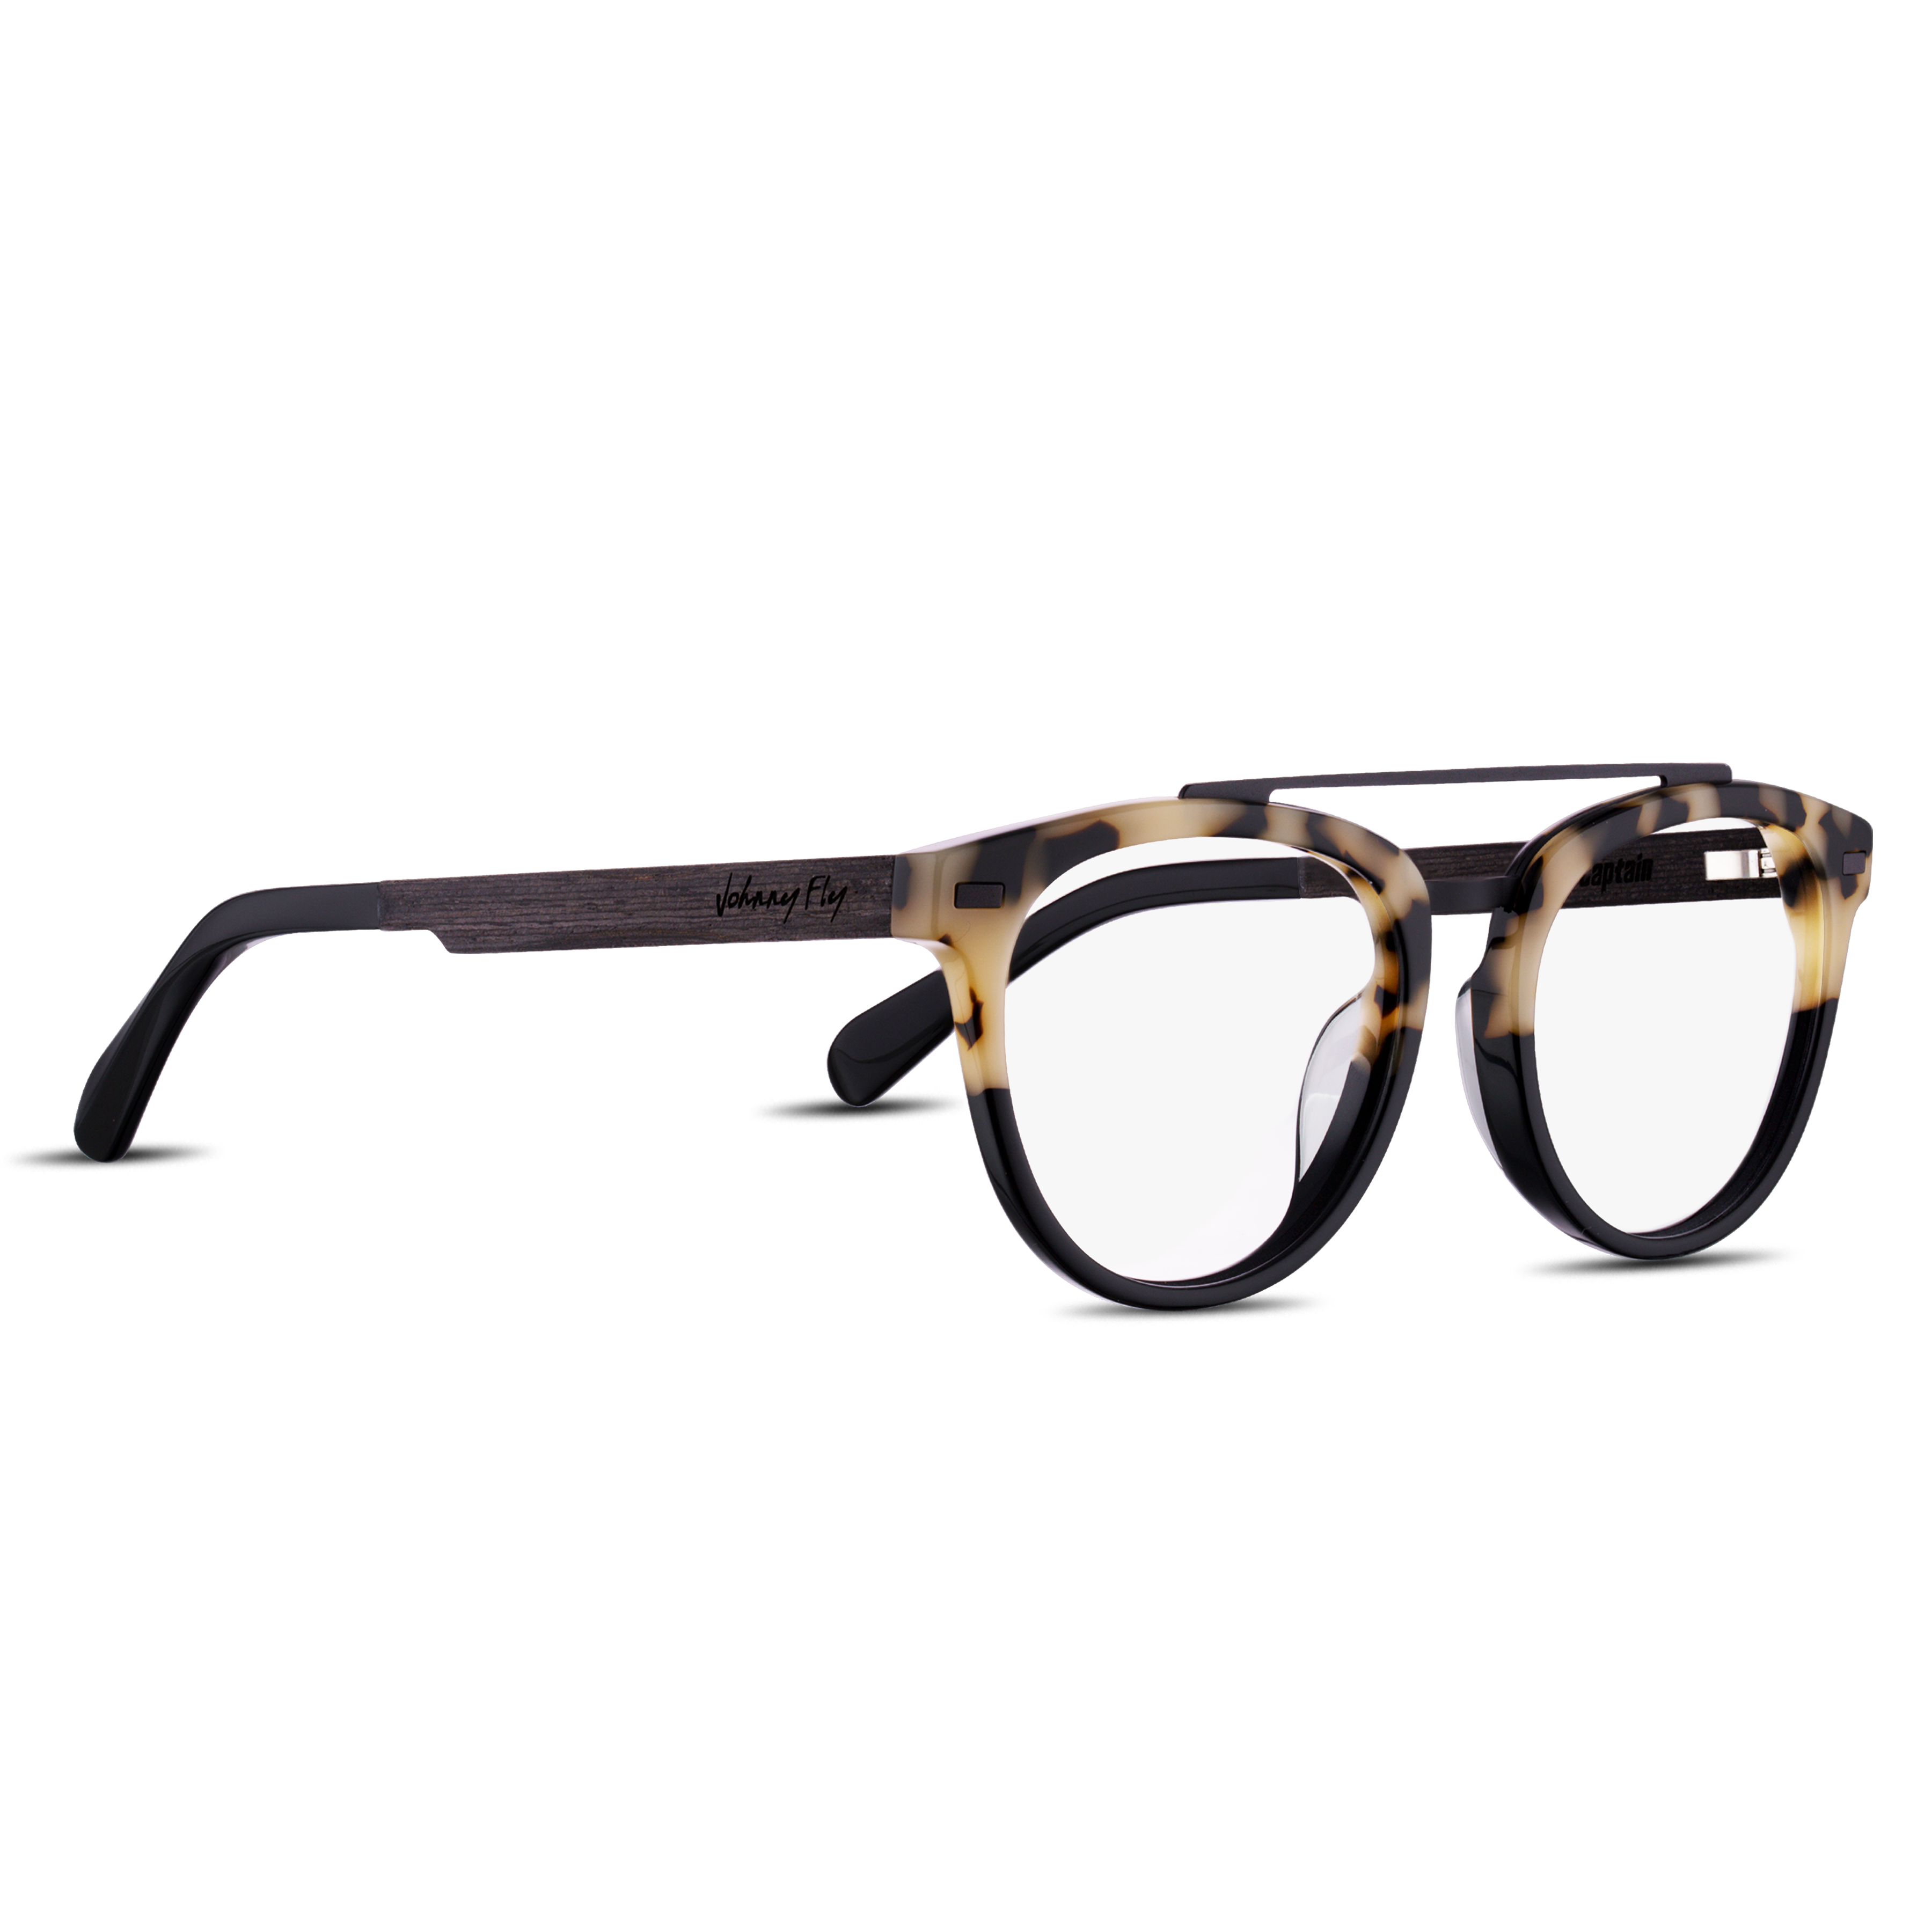 CAPTAIN Frame - Split White Tortoise - Eyeglasses Frame - Johnny Fly Eyewear 